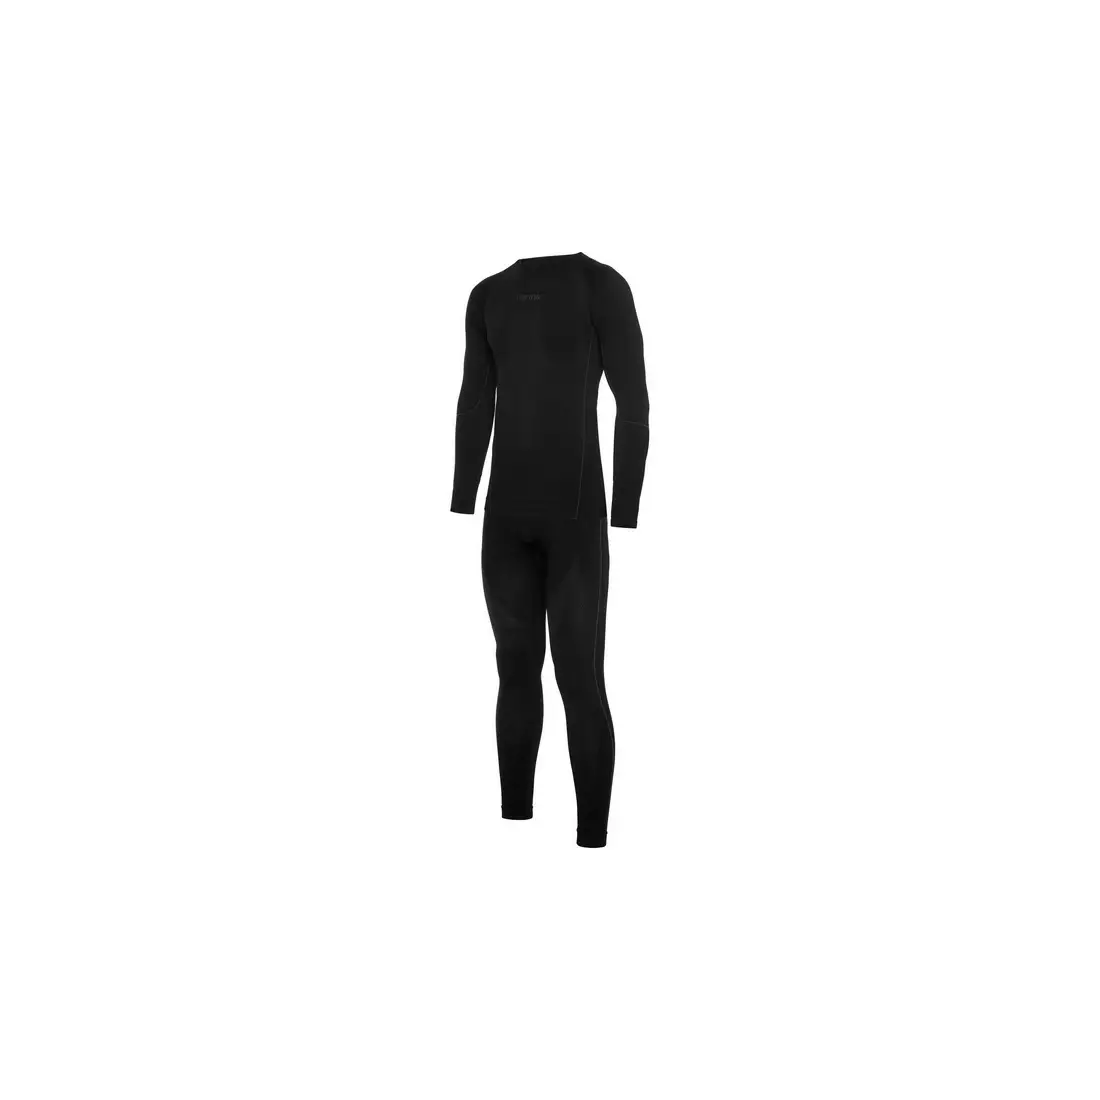 VIKING pánska súprava termoaktívneho spodného prádla tričko + legíny + trenírky Eiger 500/21/2080/09